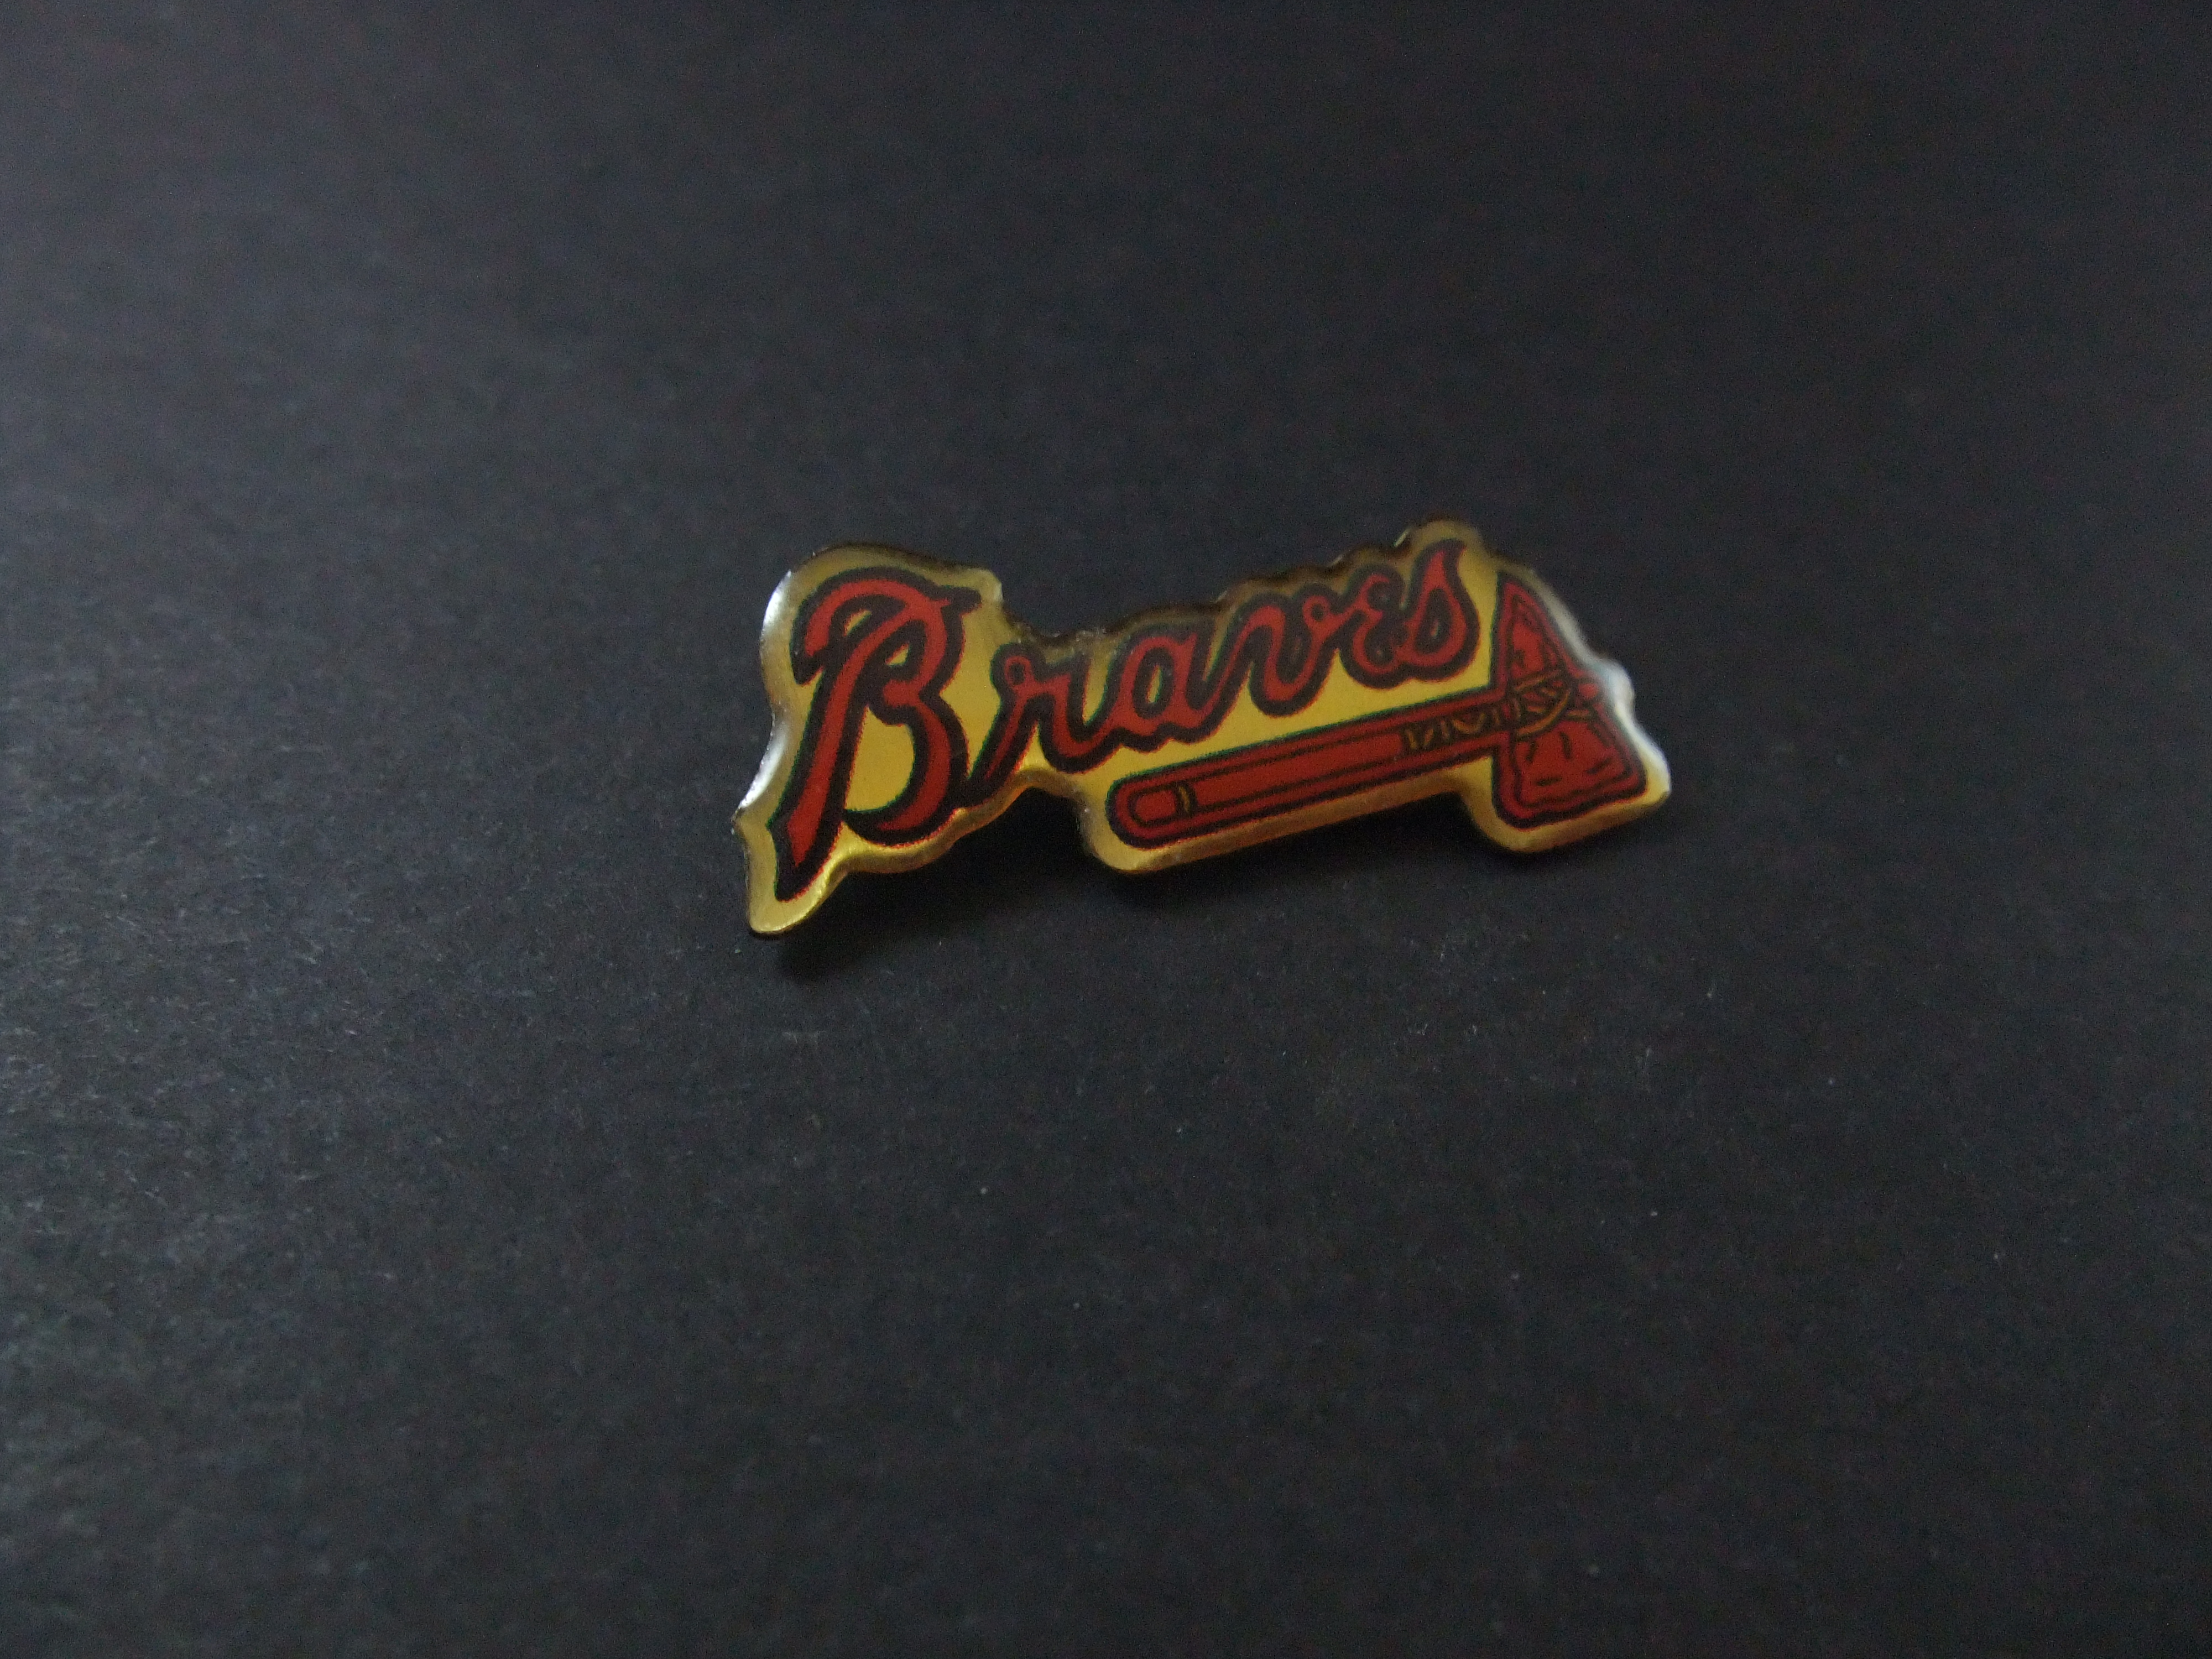 The Atlanta Braves baseballteam logo